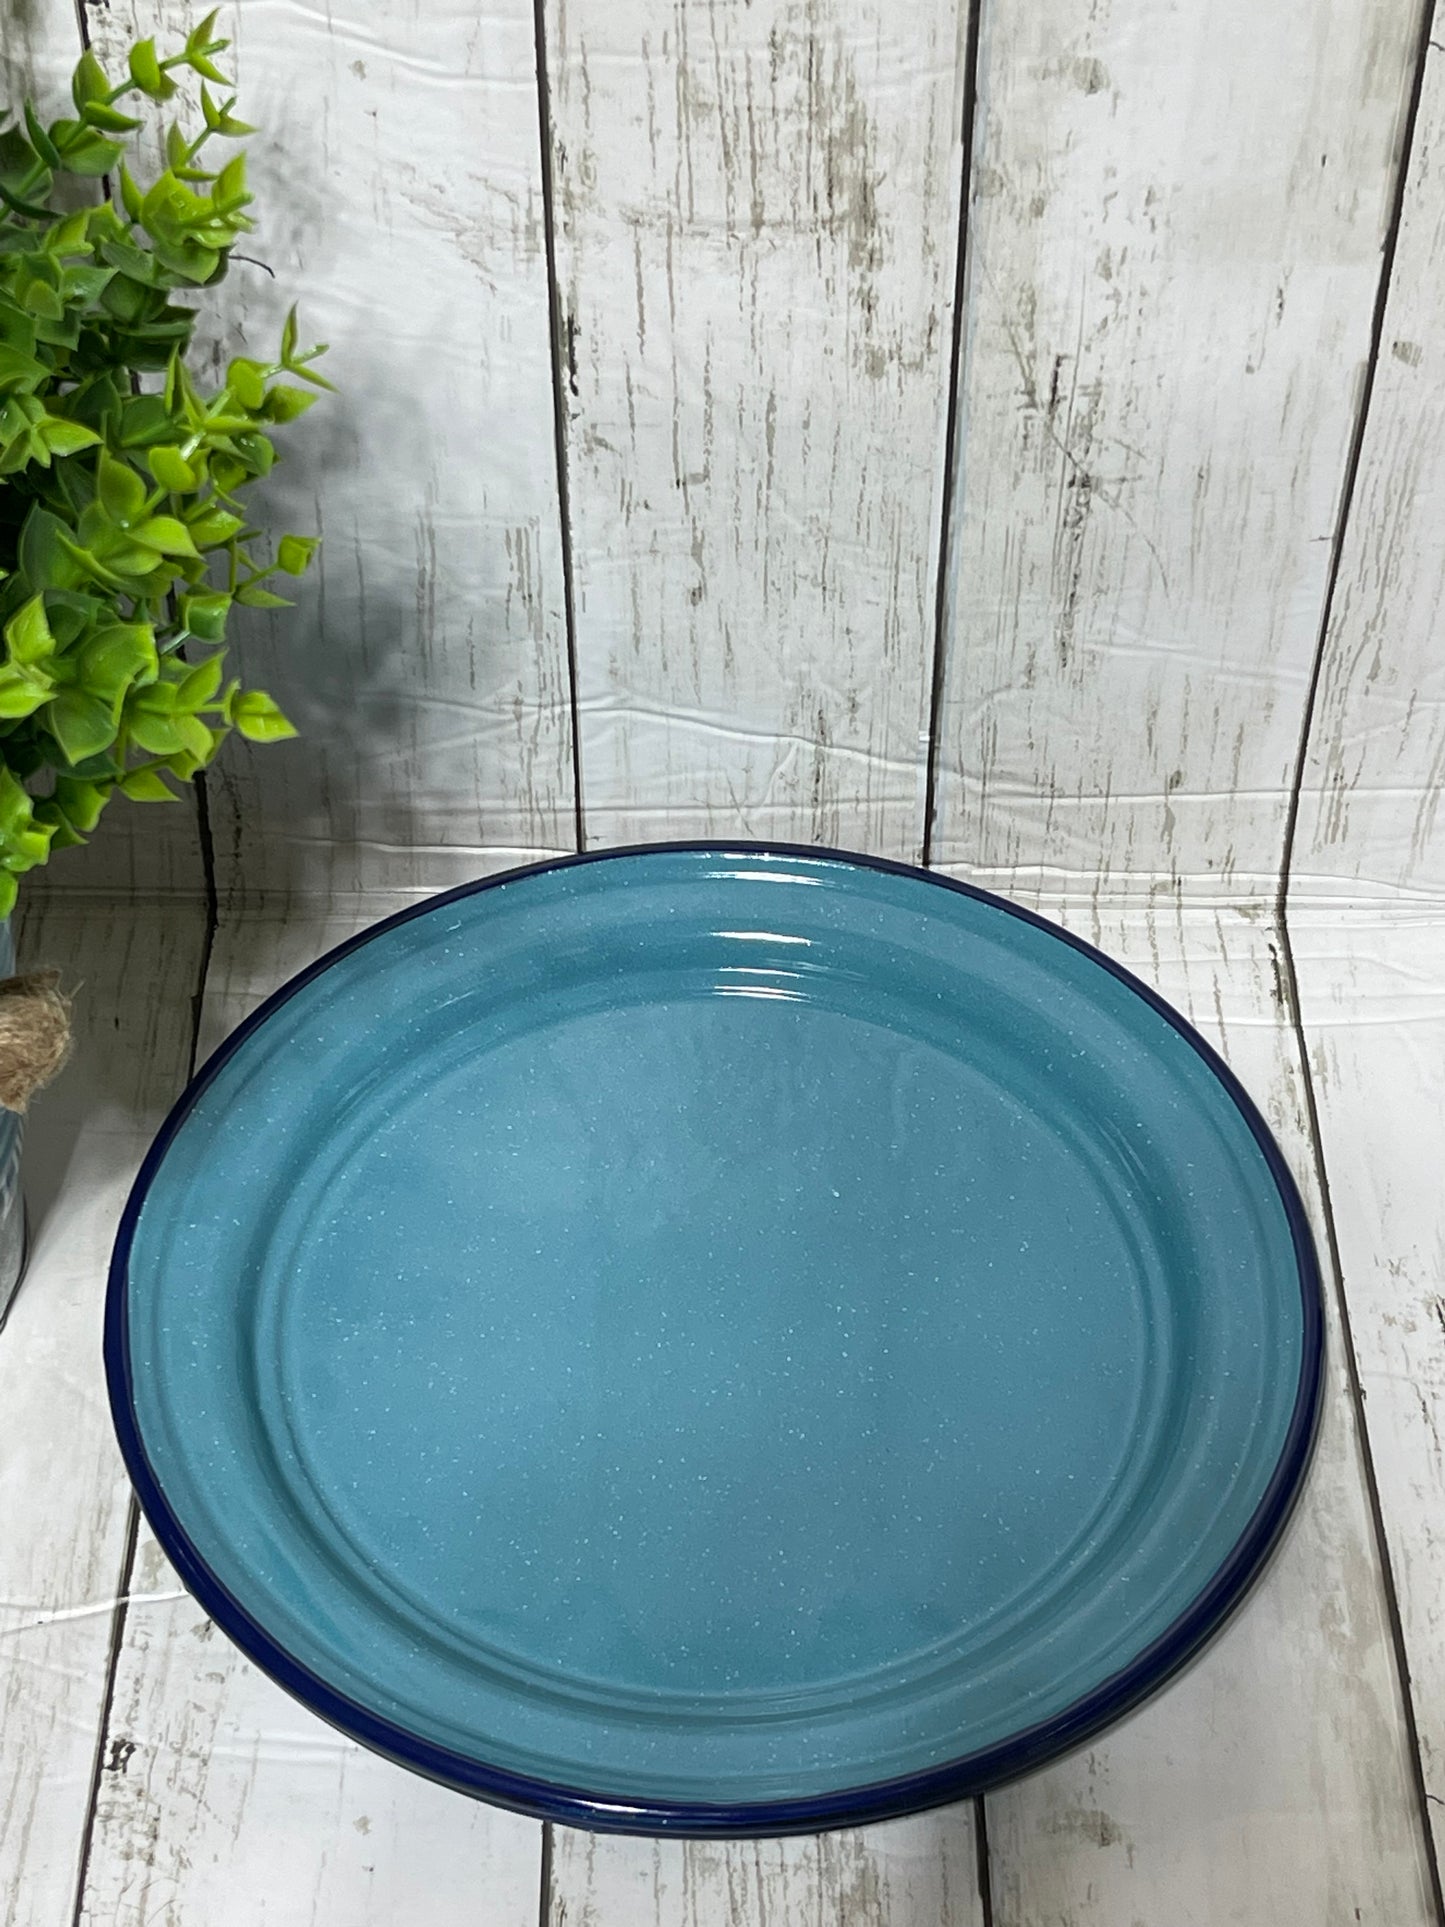 Mexican blue - steel 10” round plate/ Plato trinche peltre azul turquesa